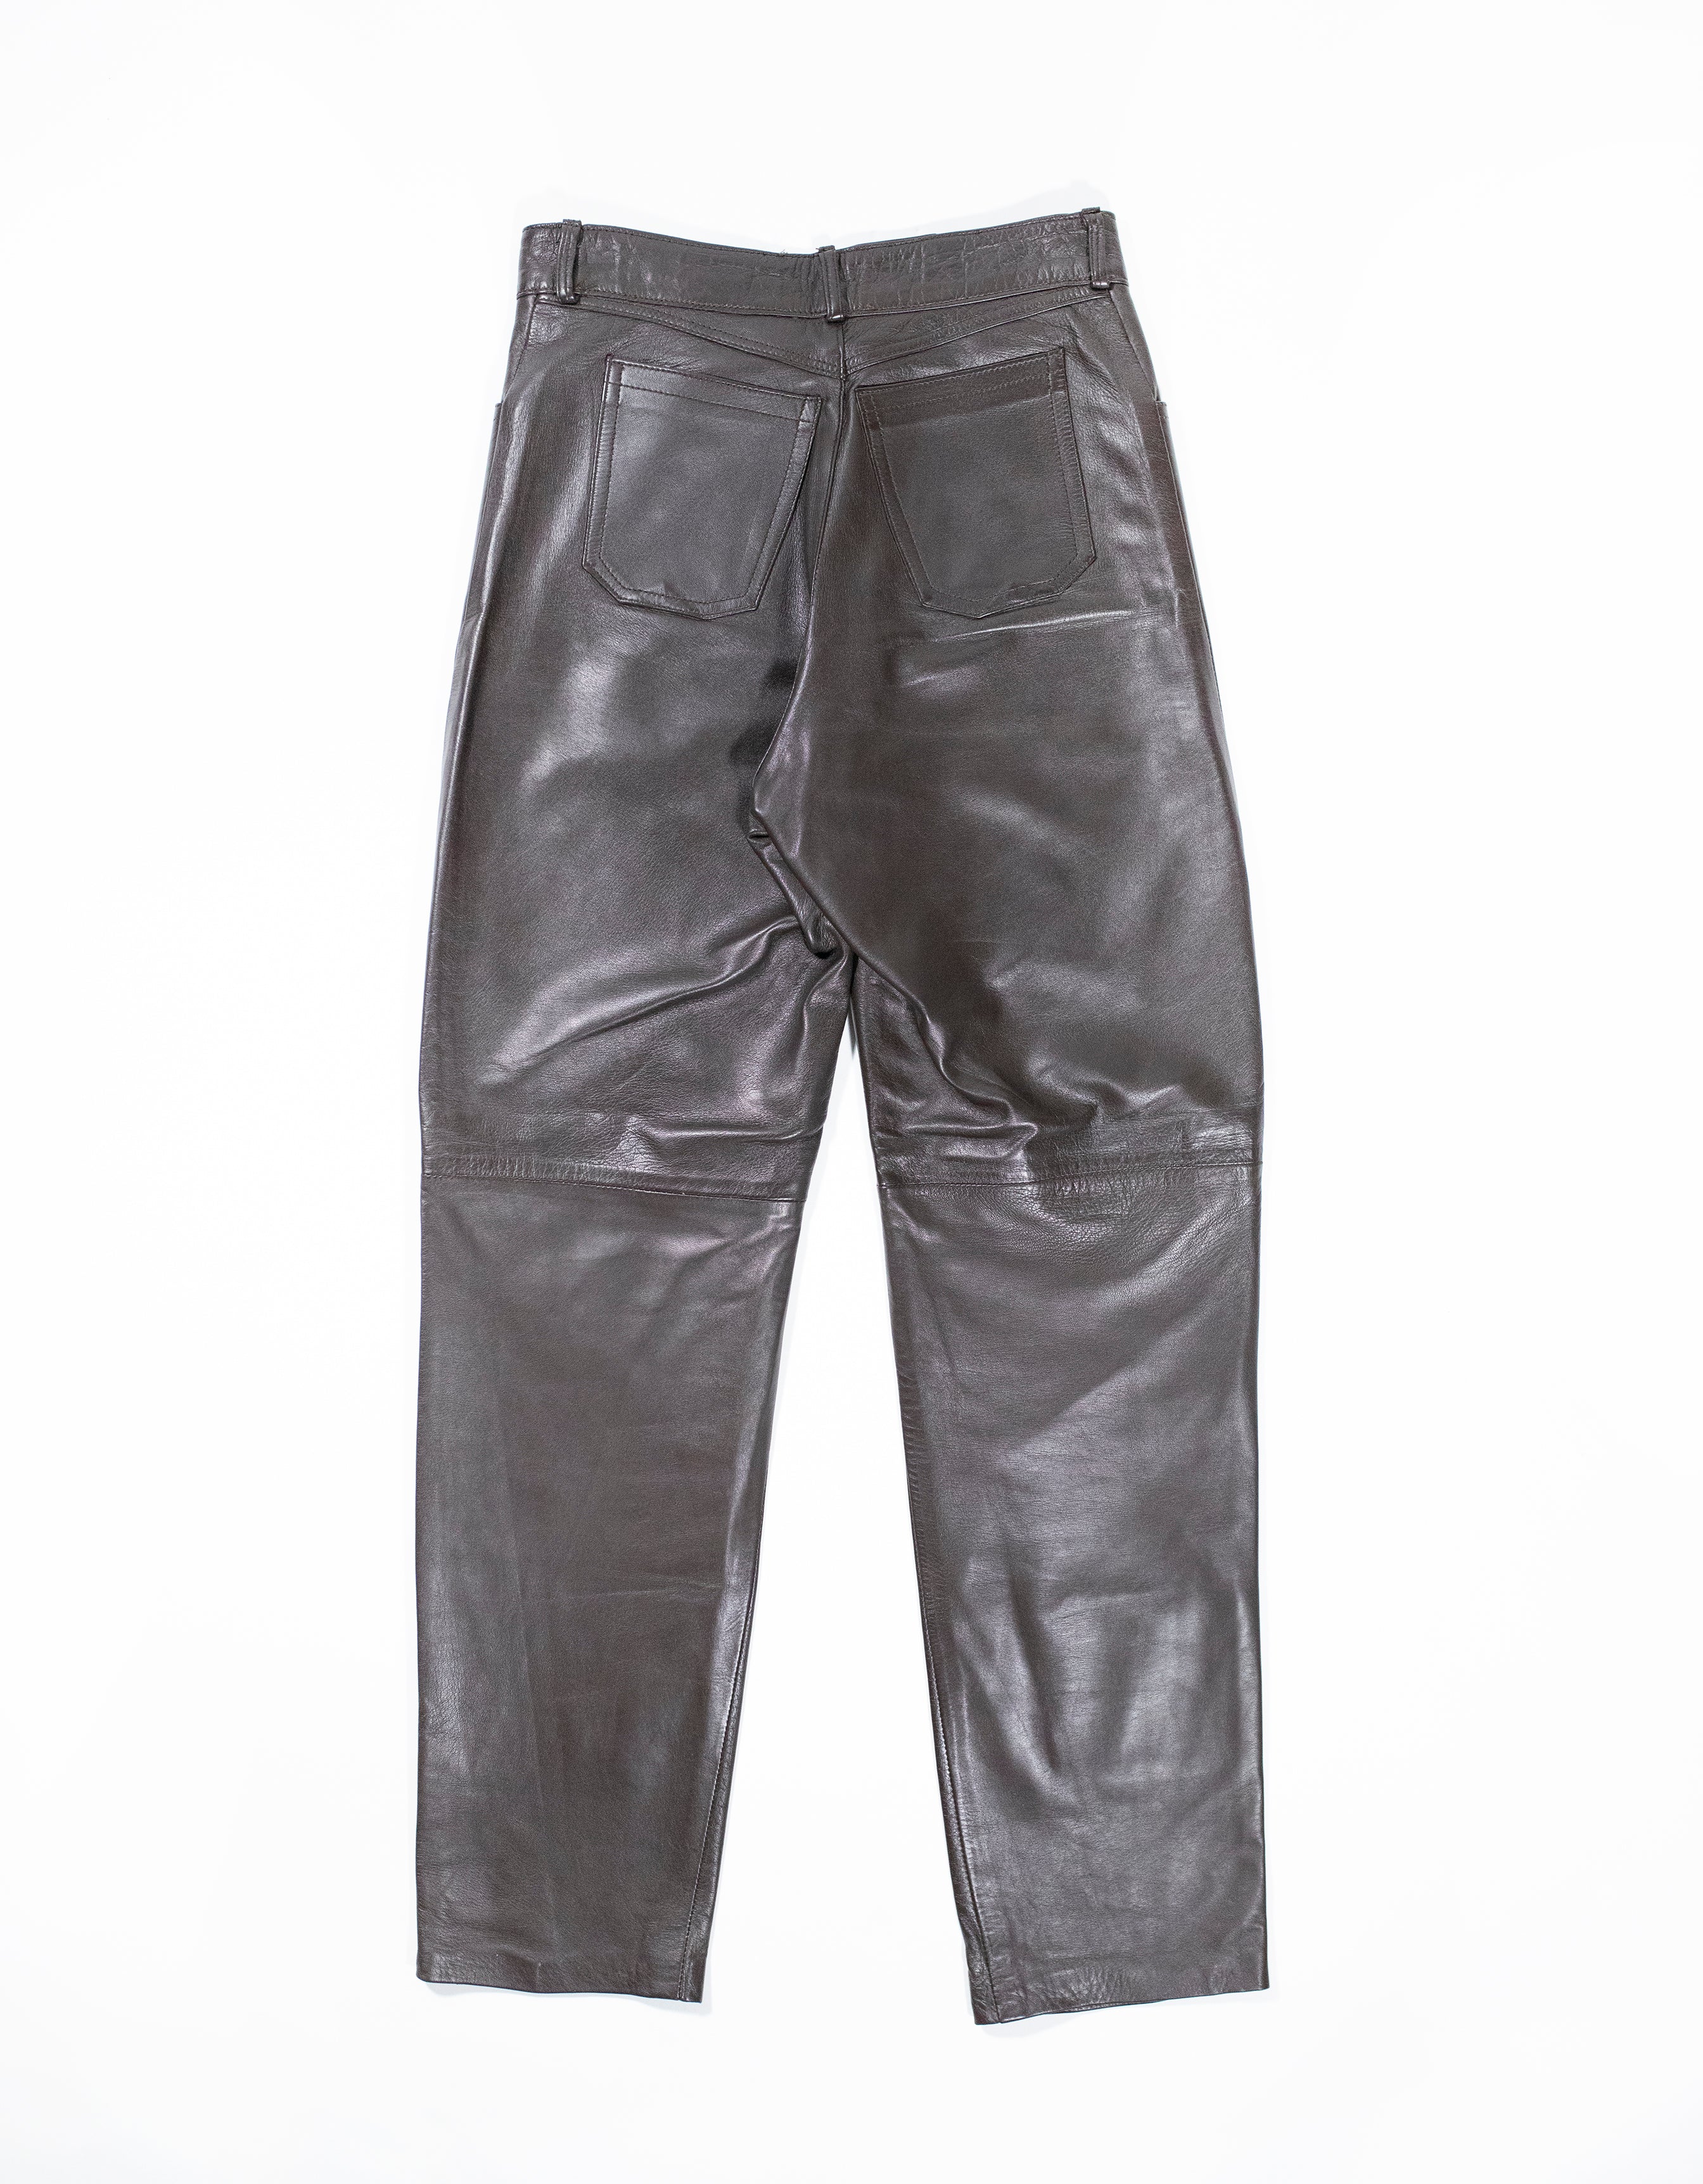 Vintage Brown Leather Pant